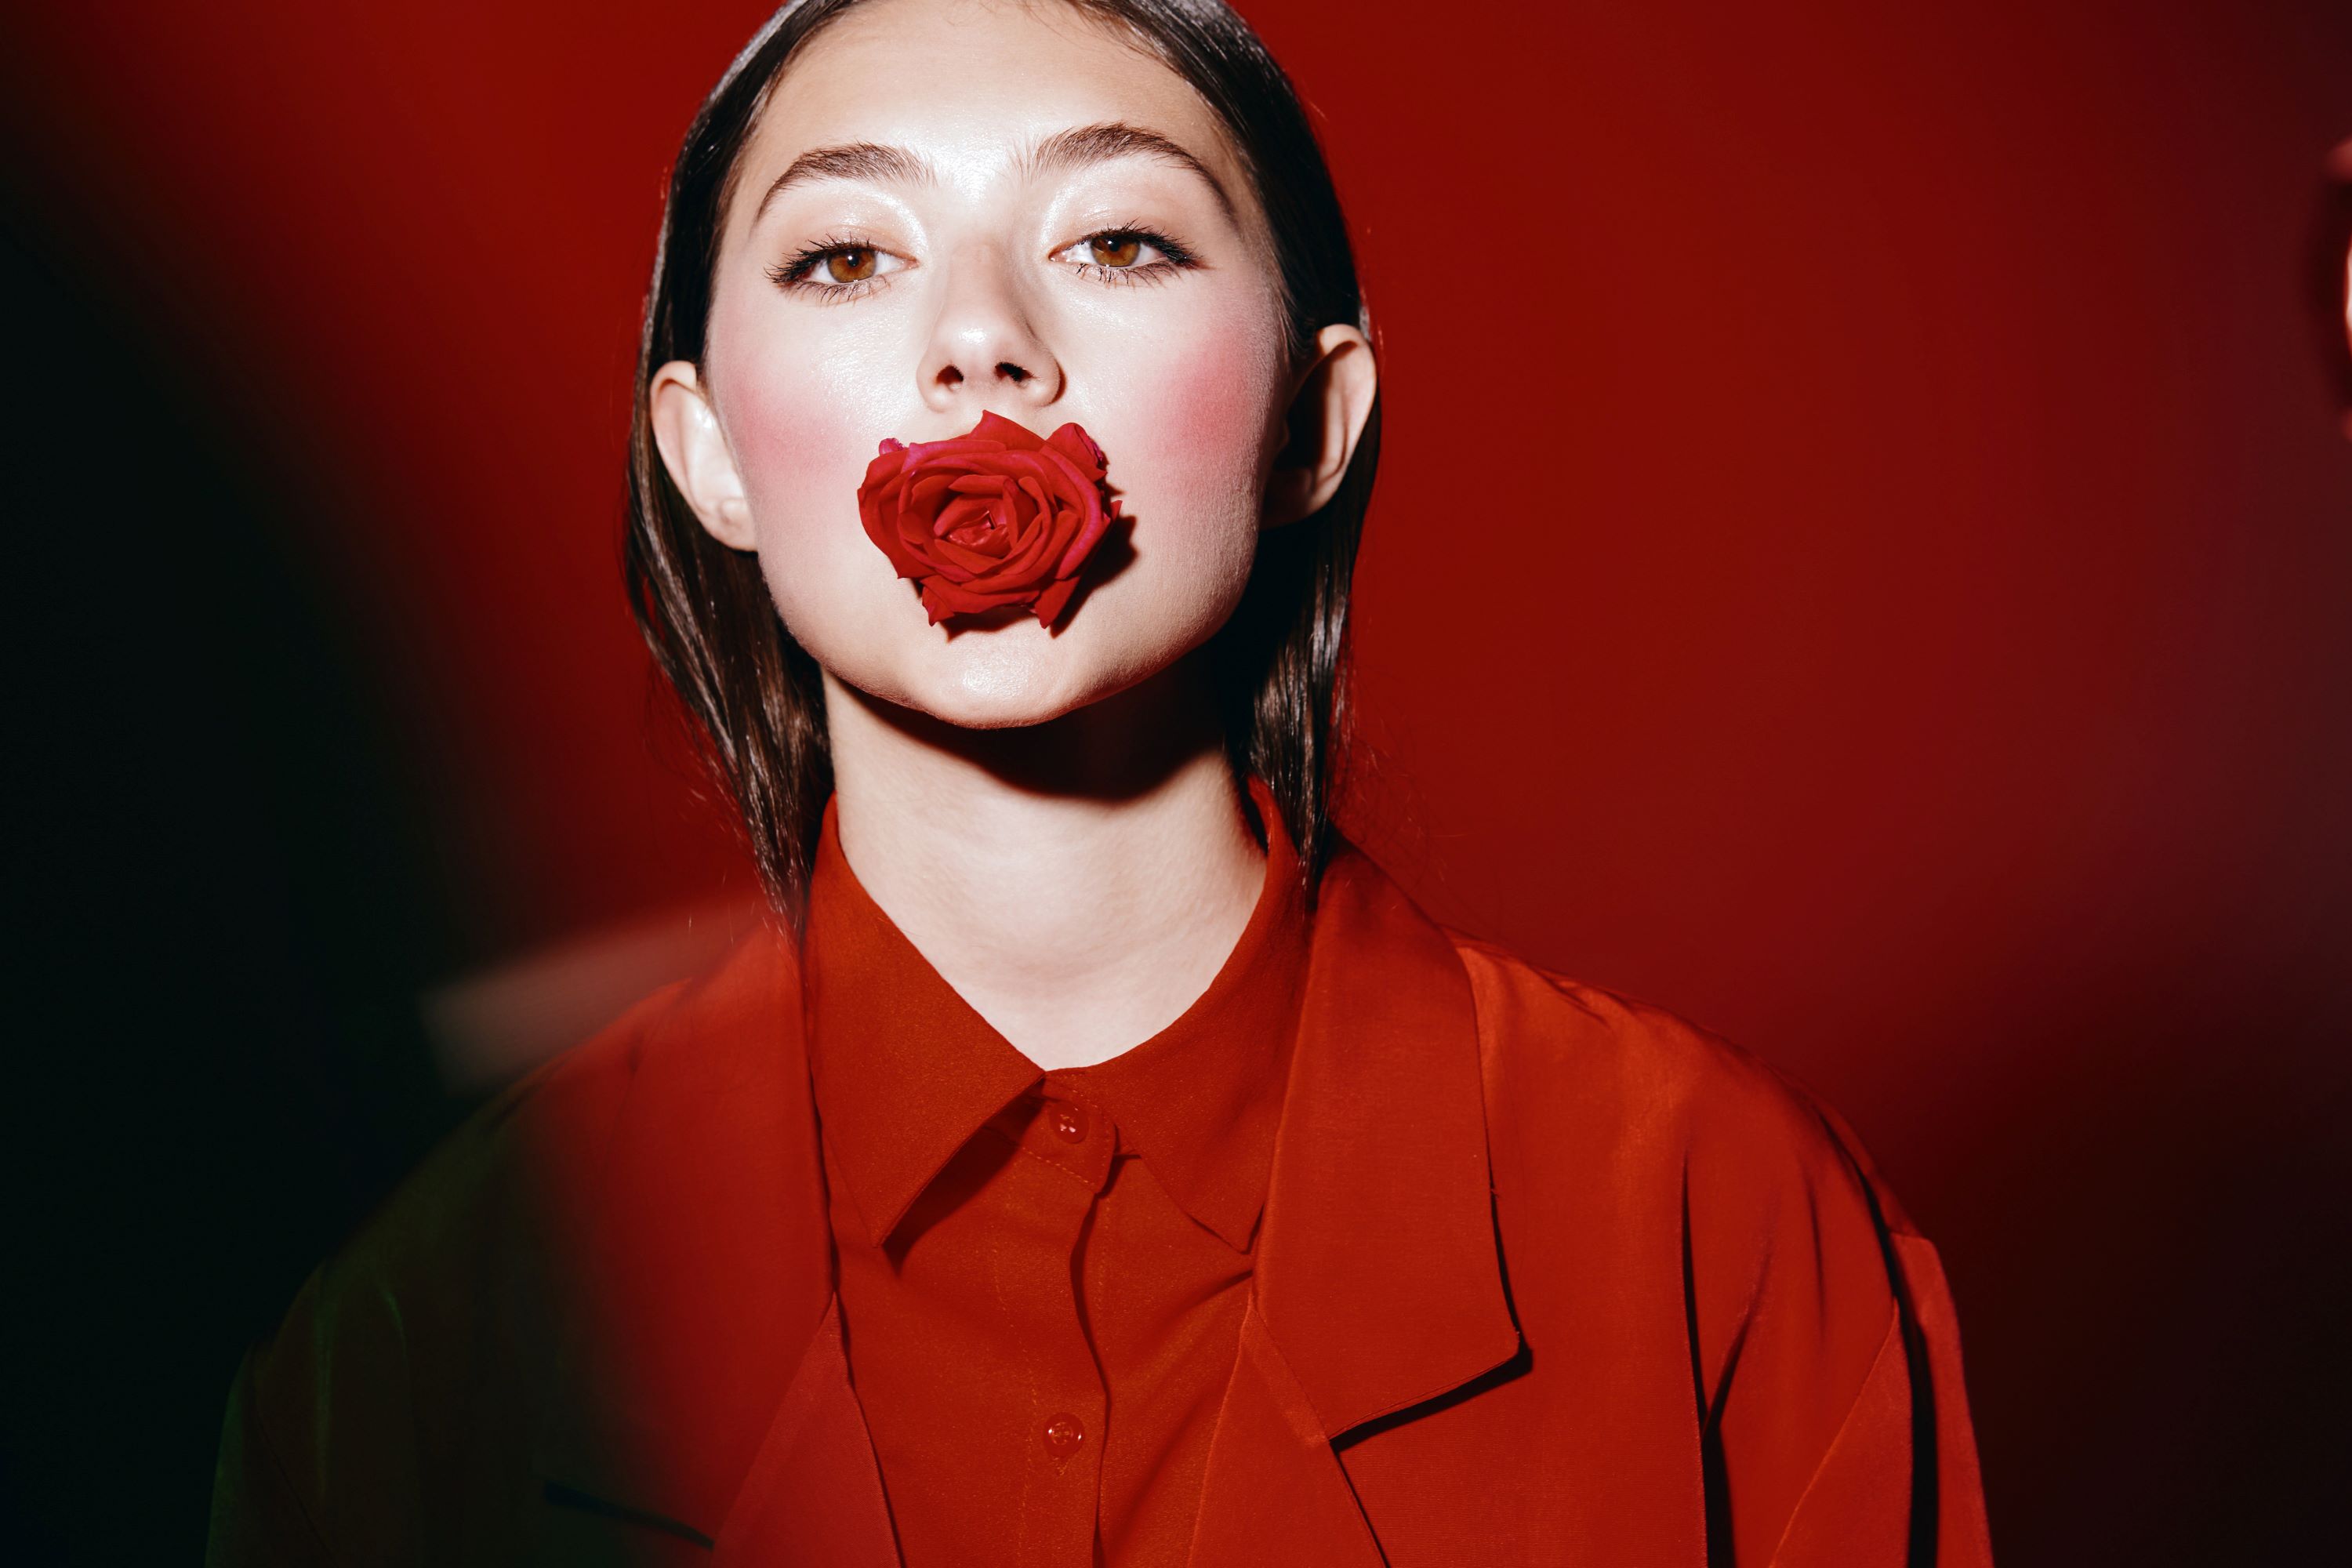 Eine in rot gekleidete Frau mit einer roten Rose im Mund - vor einem roten Hintergrund.